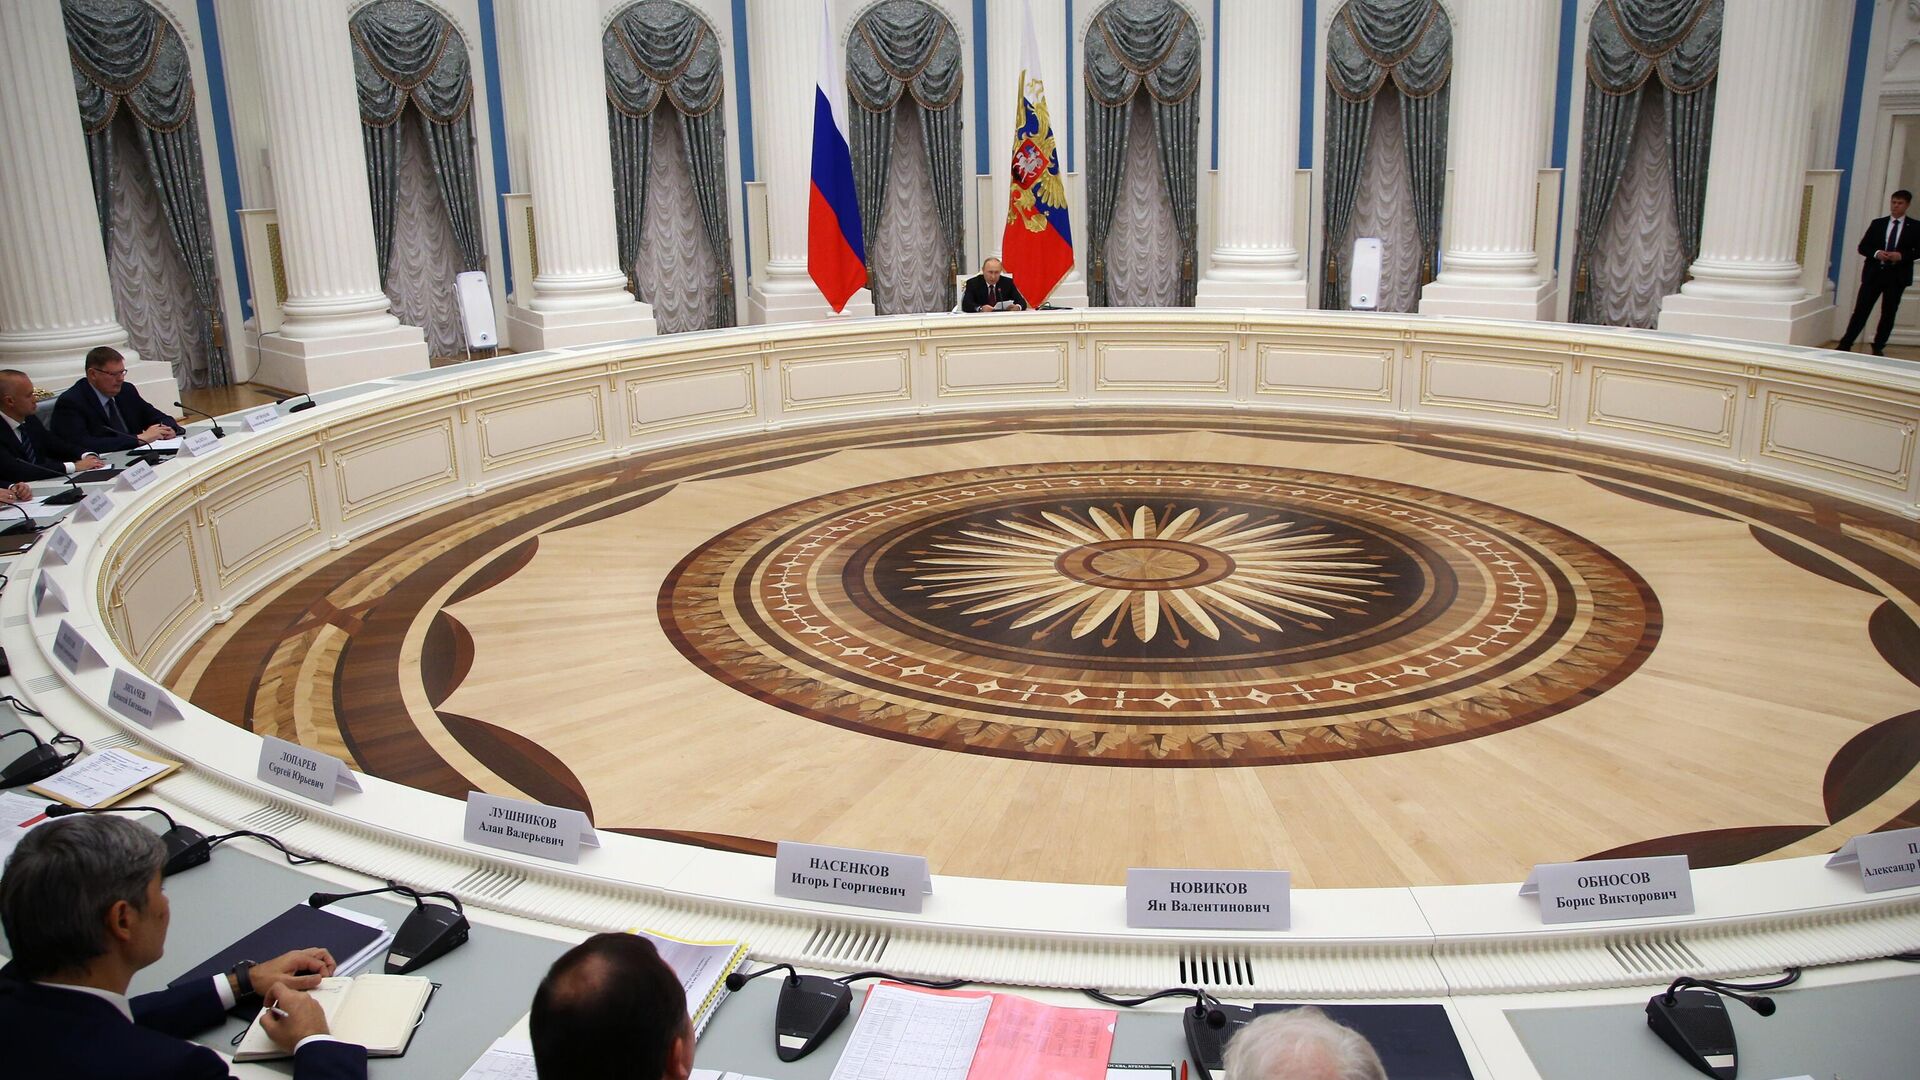 Ο Ρώσος Πρόεδρος Βλαντιμίρ Πούτιν πραγματοποιεί συνάντηση με τους επικεφαλής των επιχειρήσεων της ρωσικής αμυντικής βιομηχανίας - RIA Novosti, 1920, 20/09/2022